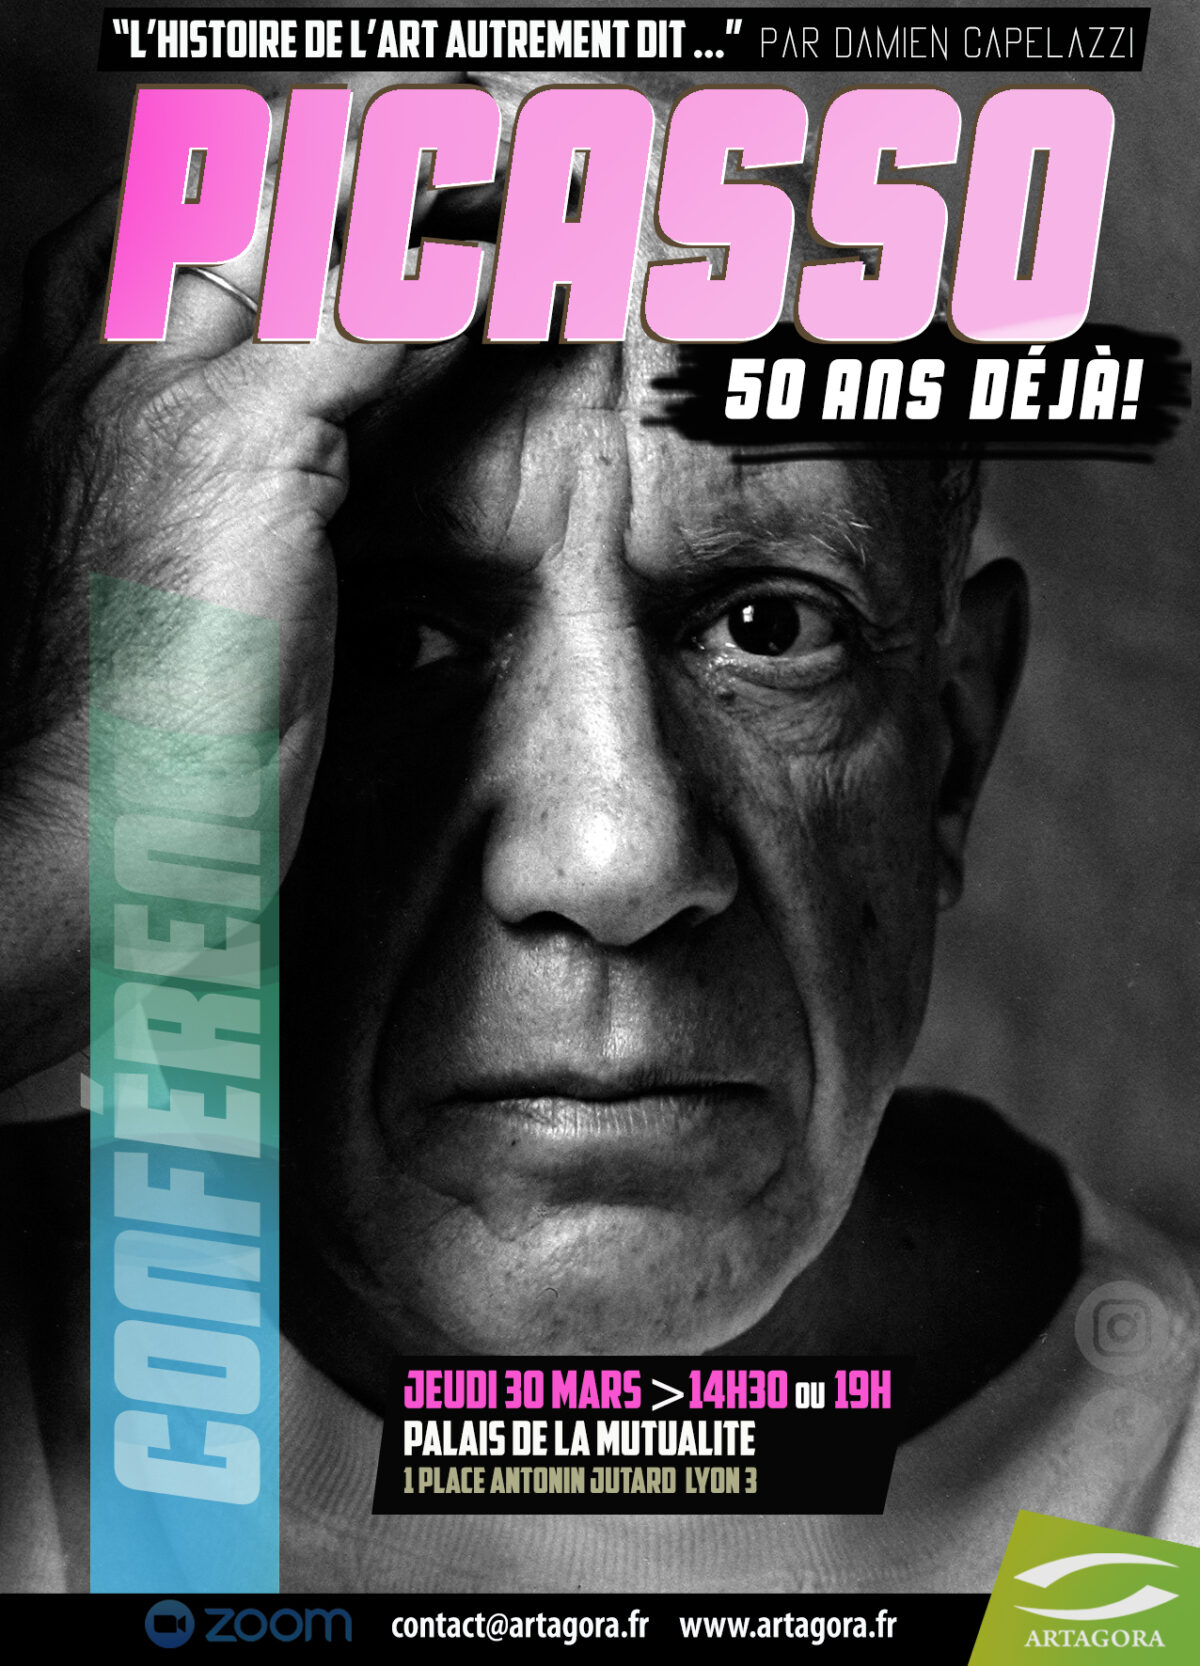 Picasso, 50ans déjà!